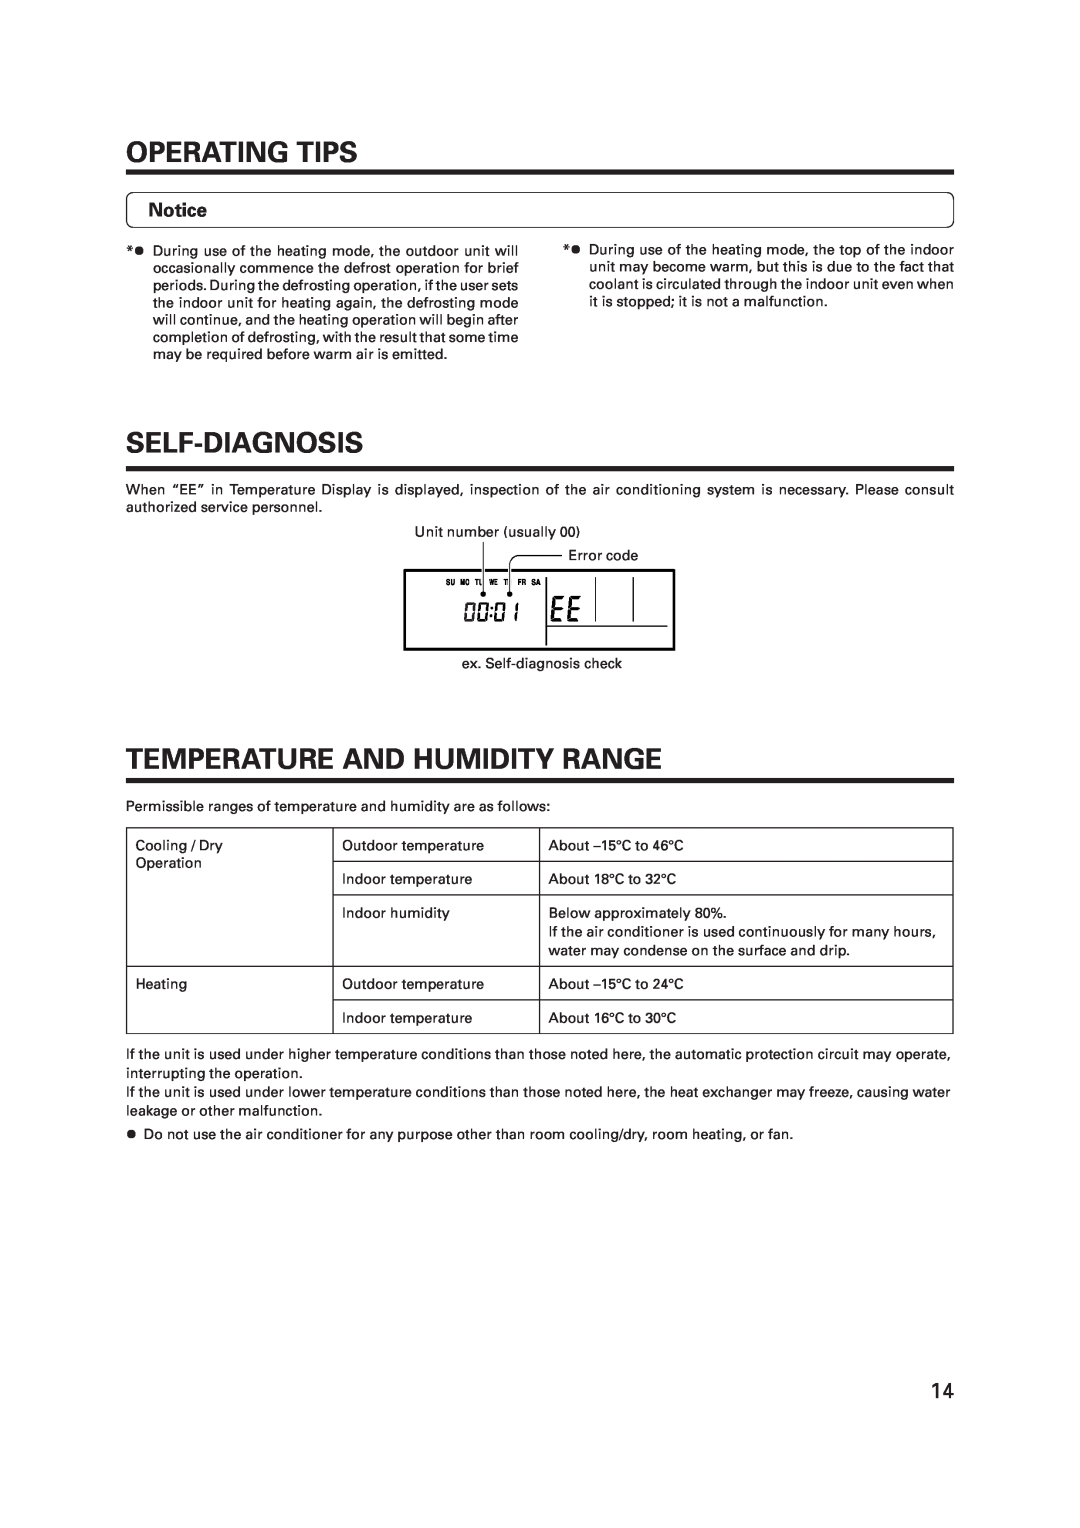 Fujitsu R410A operation manual Self-Diagnosis, Temperature And Humidity Range, Operating Tips 